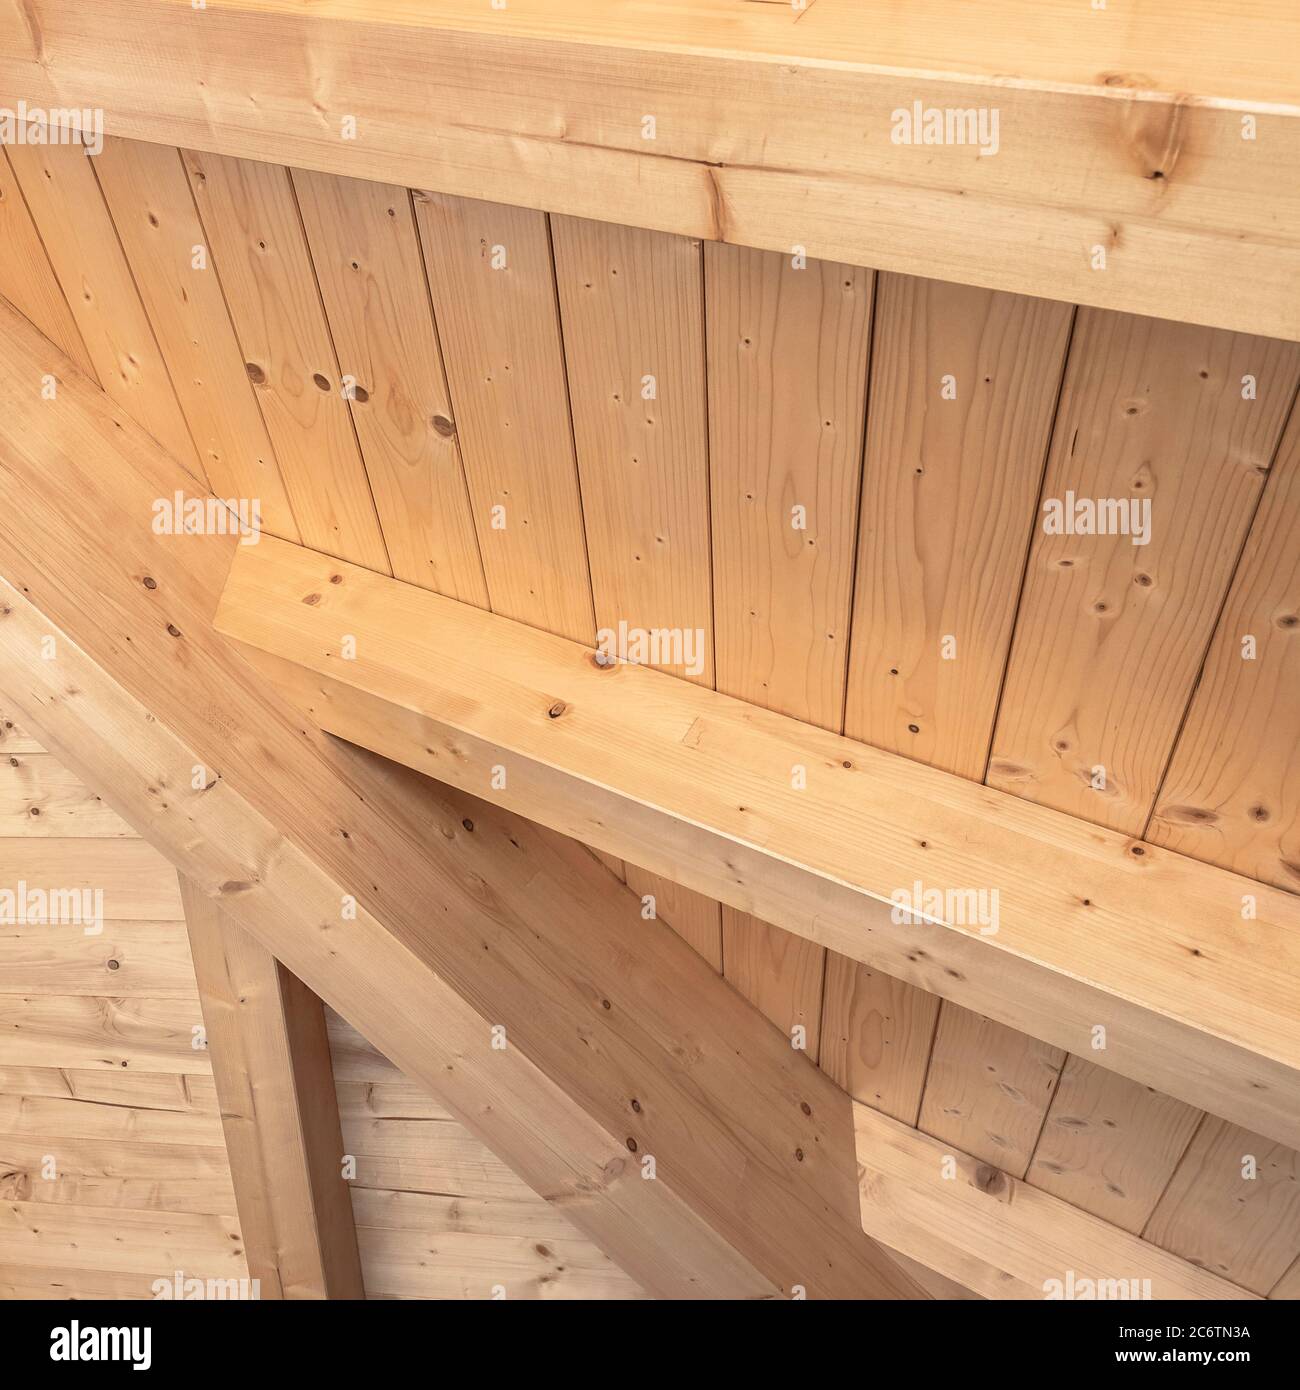 Holzdecke mit freiliegenden Balken. Innen Holzdach mit freiliegenden Balken  Stockfotografie - Alamy